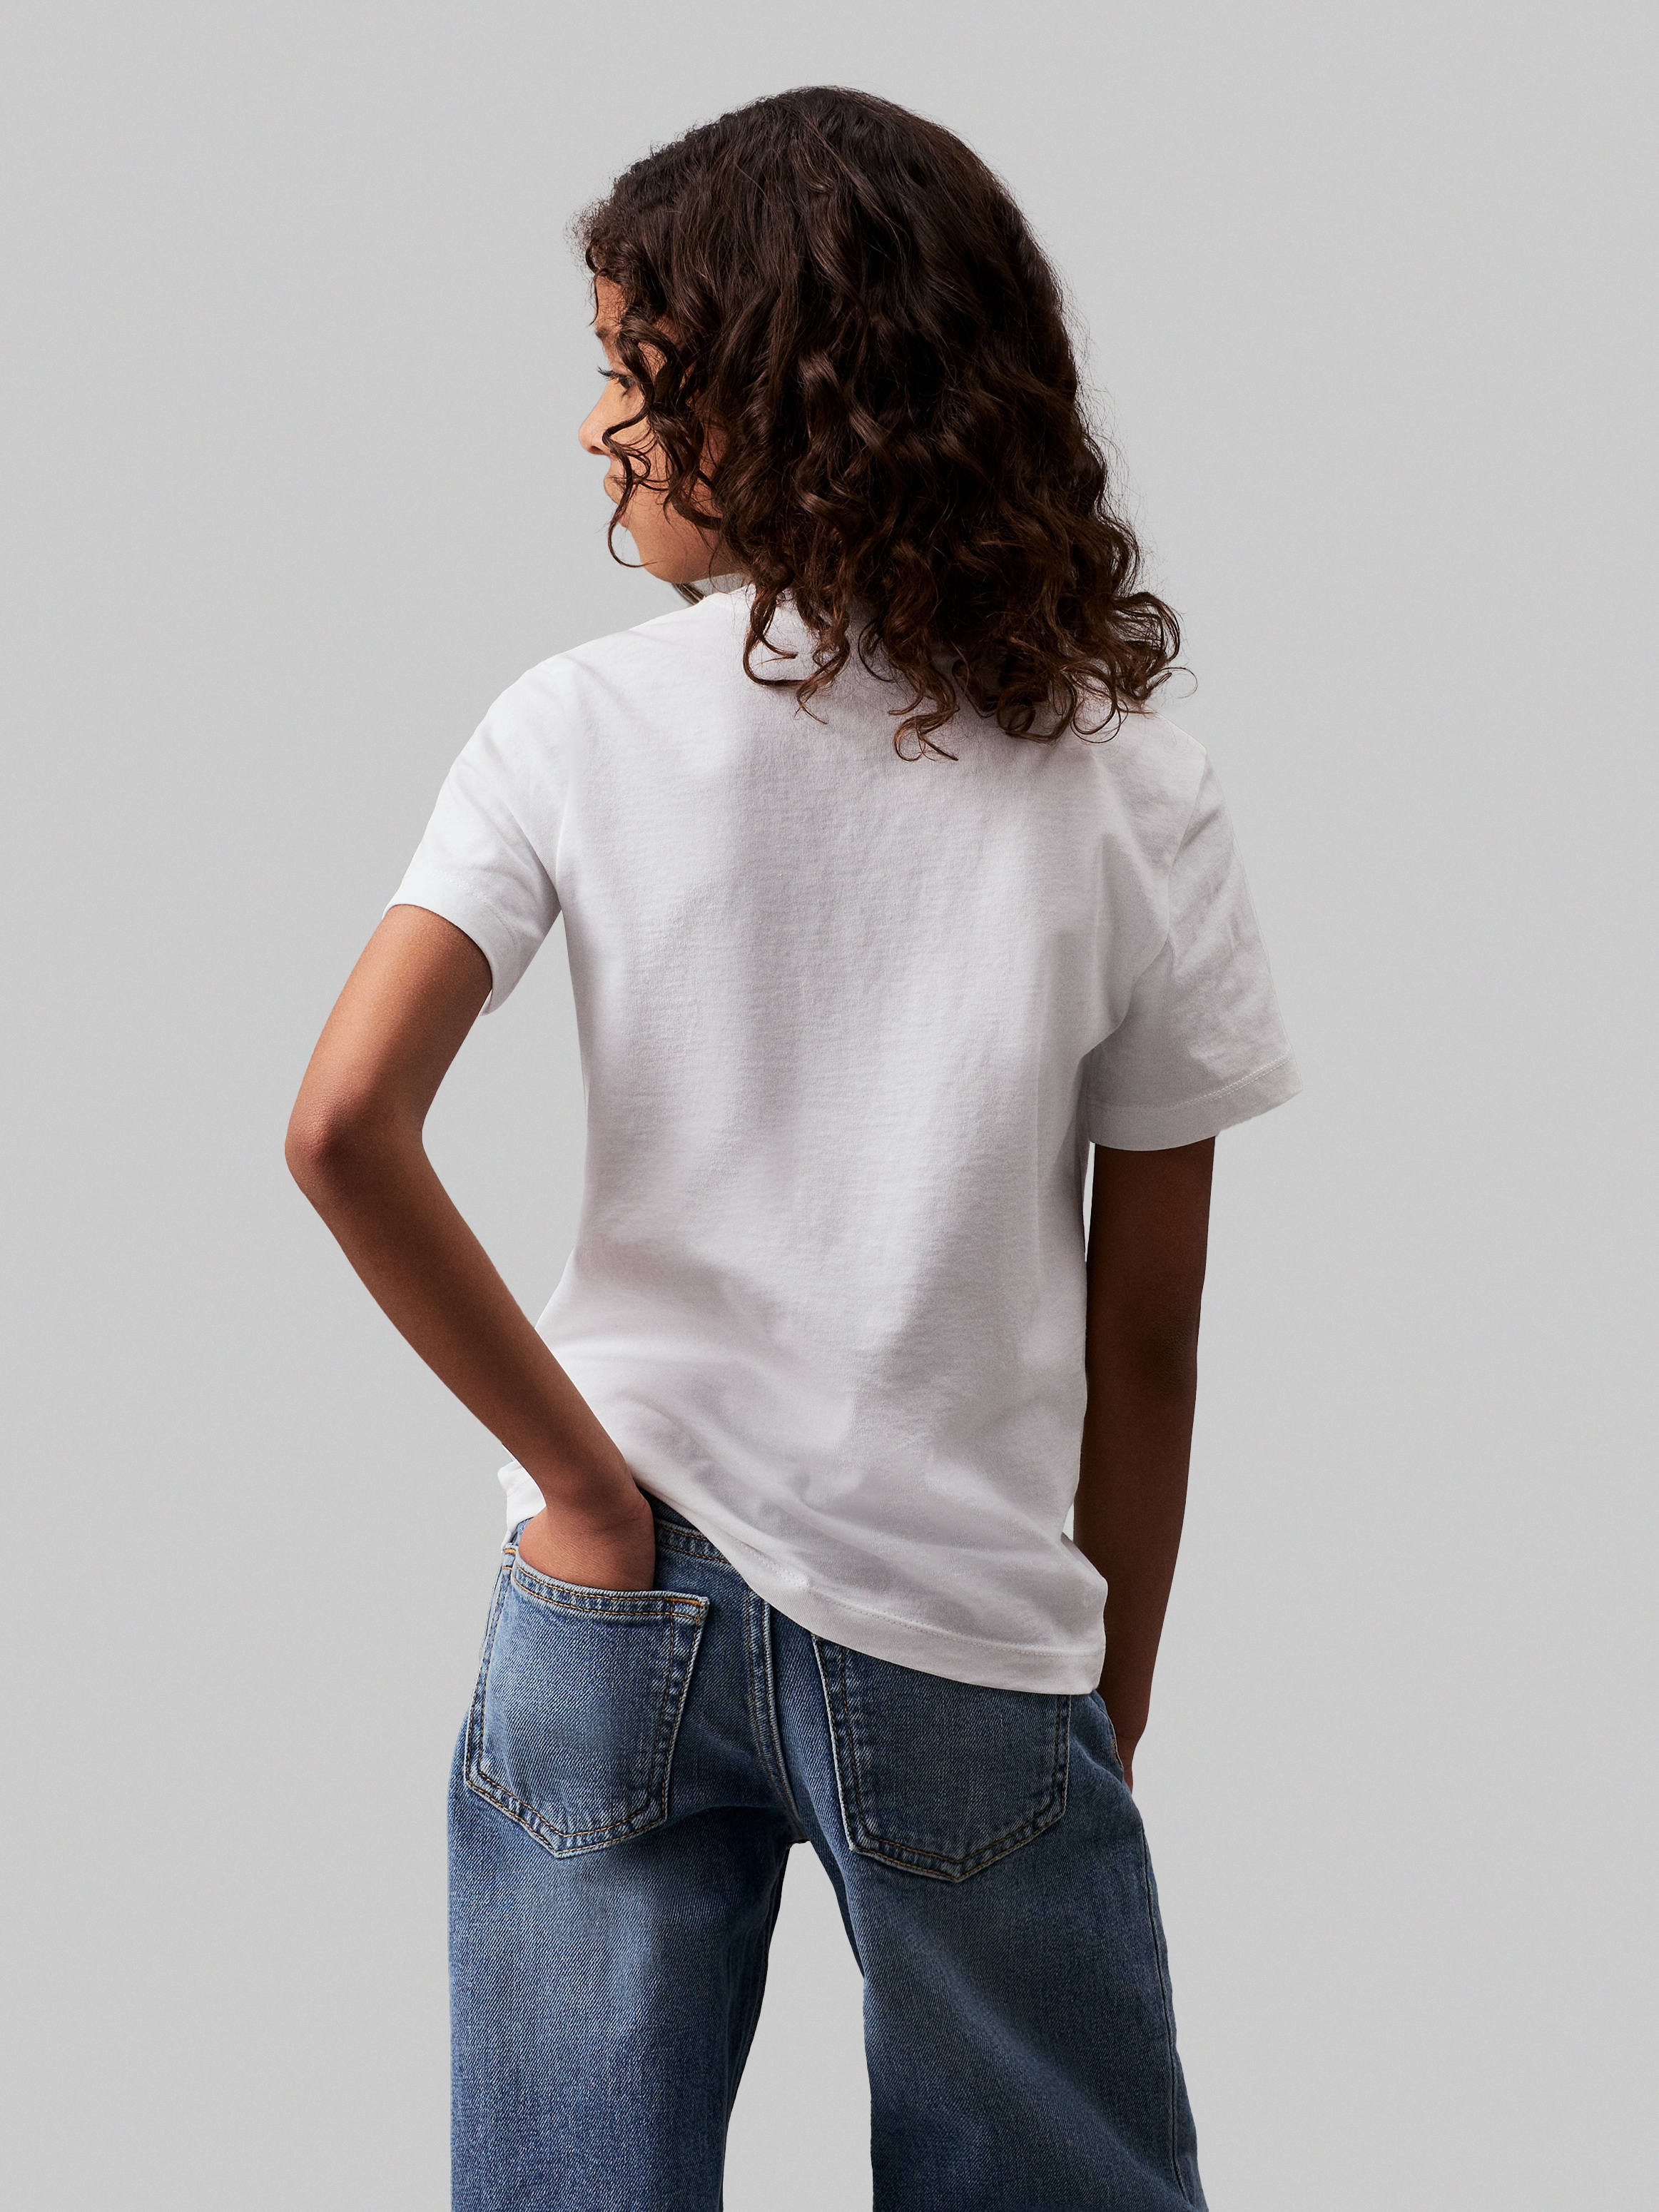 Calvin Klein Jeans T-Shirt »CHEST MONOGRAM T-SHIRT«, für Kinder bis 16 Jahre